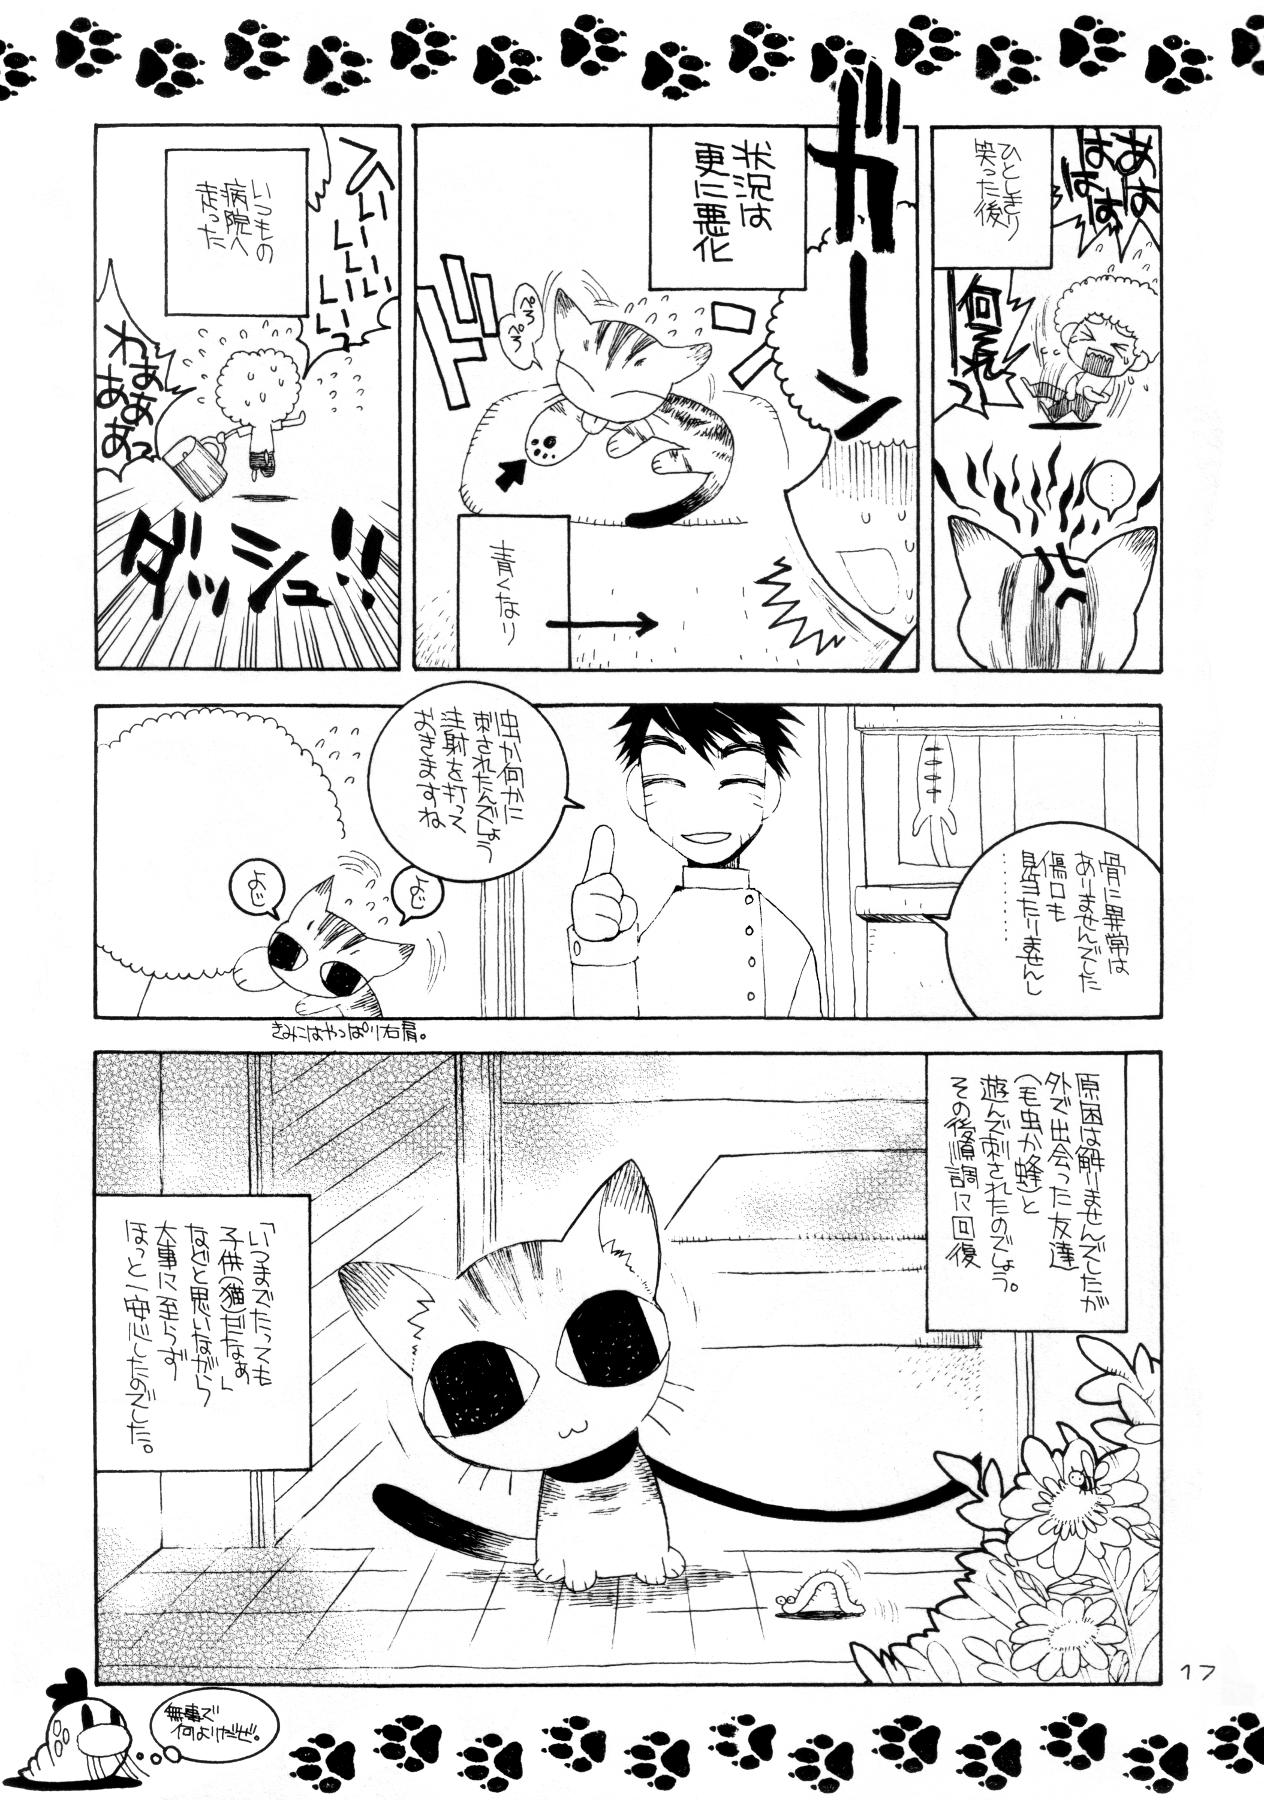 Cut Ichigo Channel! - Ichigo 100 Mofos - Page 16